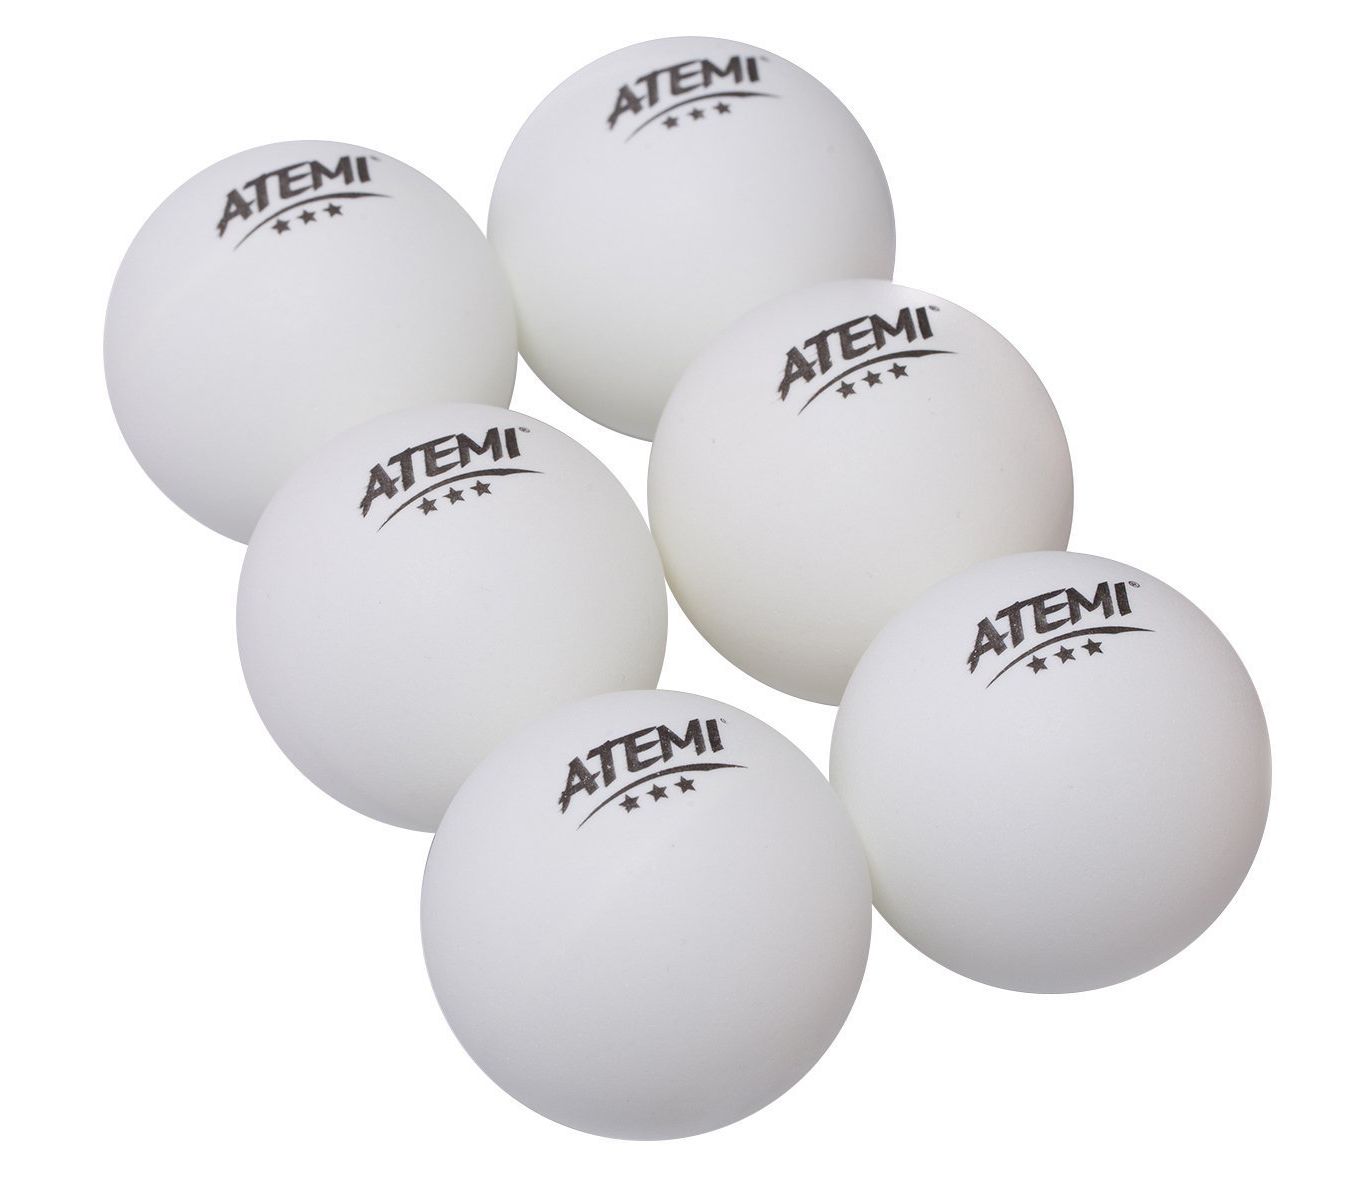 3 мяч для настольного тенниса. Мяч для настольного тенниса Atemi. Теннисный мяч для настольного тенниса. Мячи для пинг-понга набор 3 шт. (1/60/240) "Ecos" PPB-3. Мячи для настольного тенниса Atemi 3, цвет оранжевый, 6 шт.